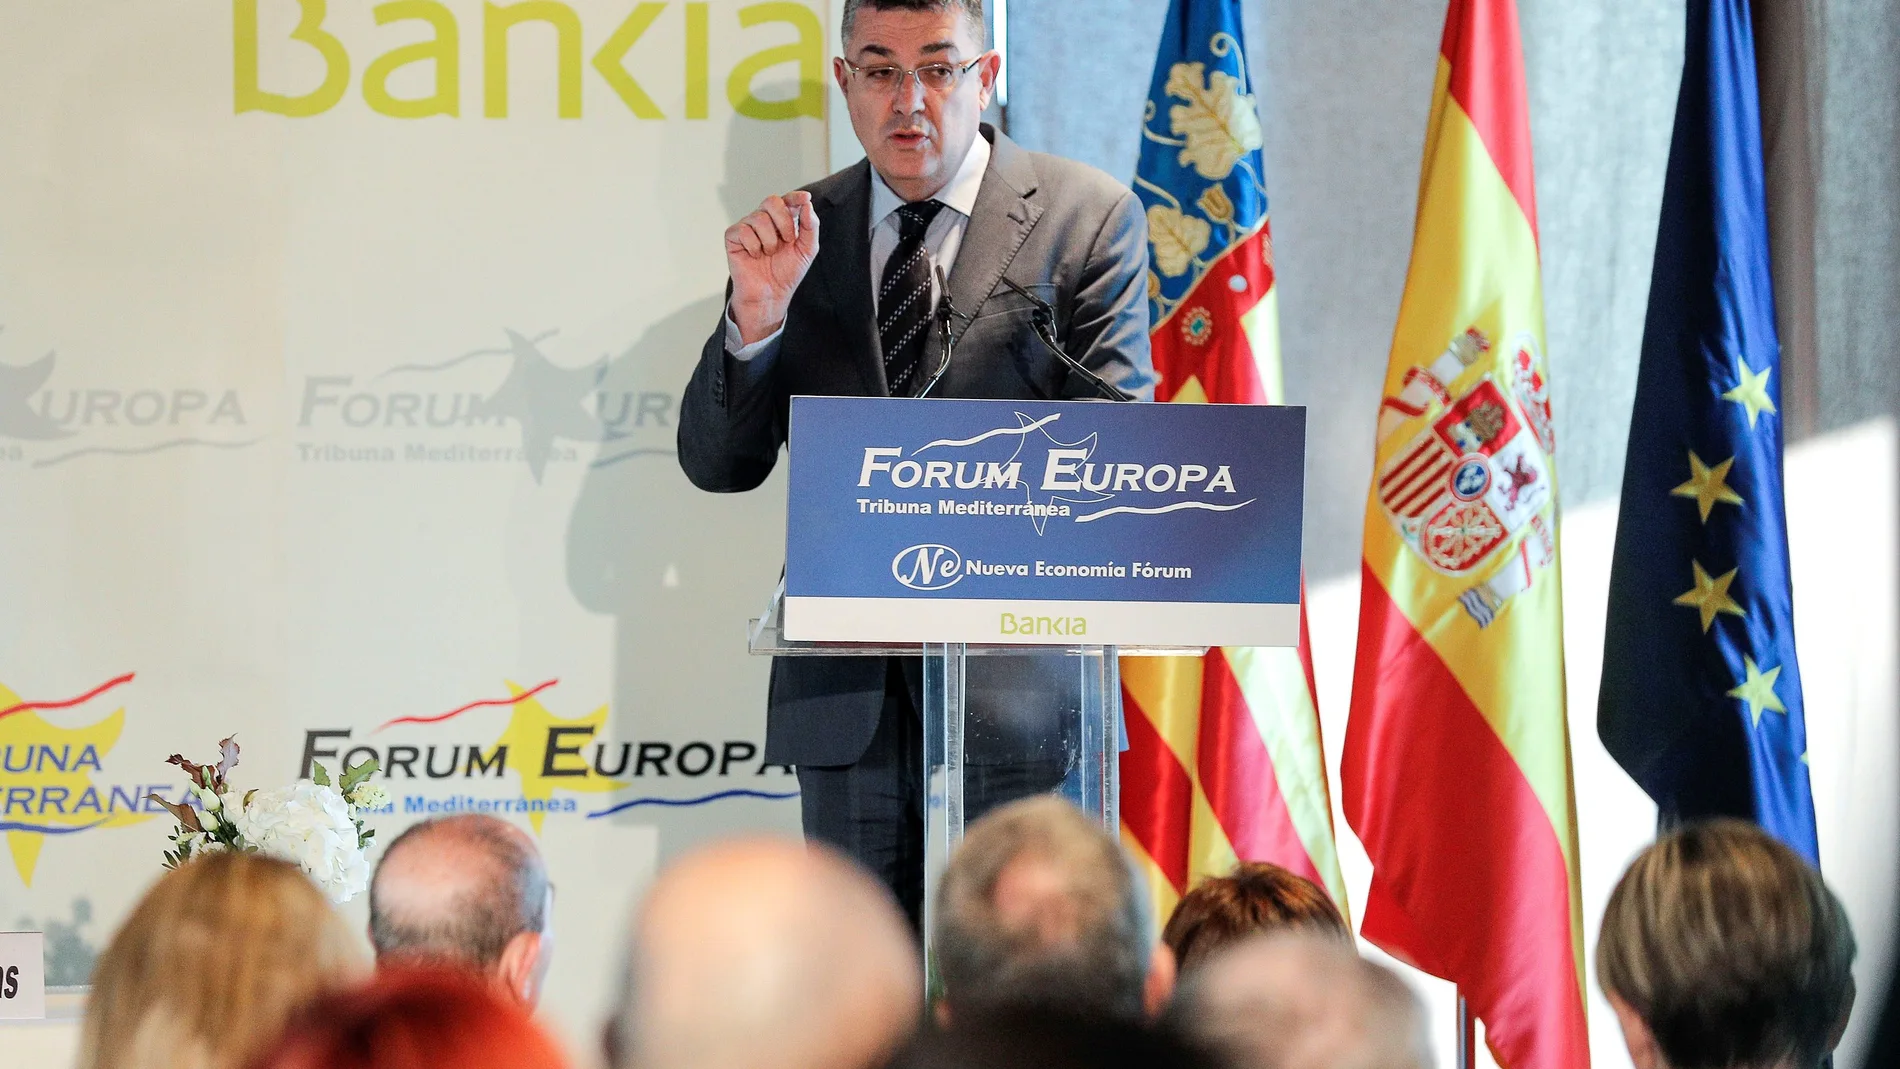 El presidente de Les Corts Valencianes, Enric Morera, interviene en el Fórum Europa Tribuna Mediterránea